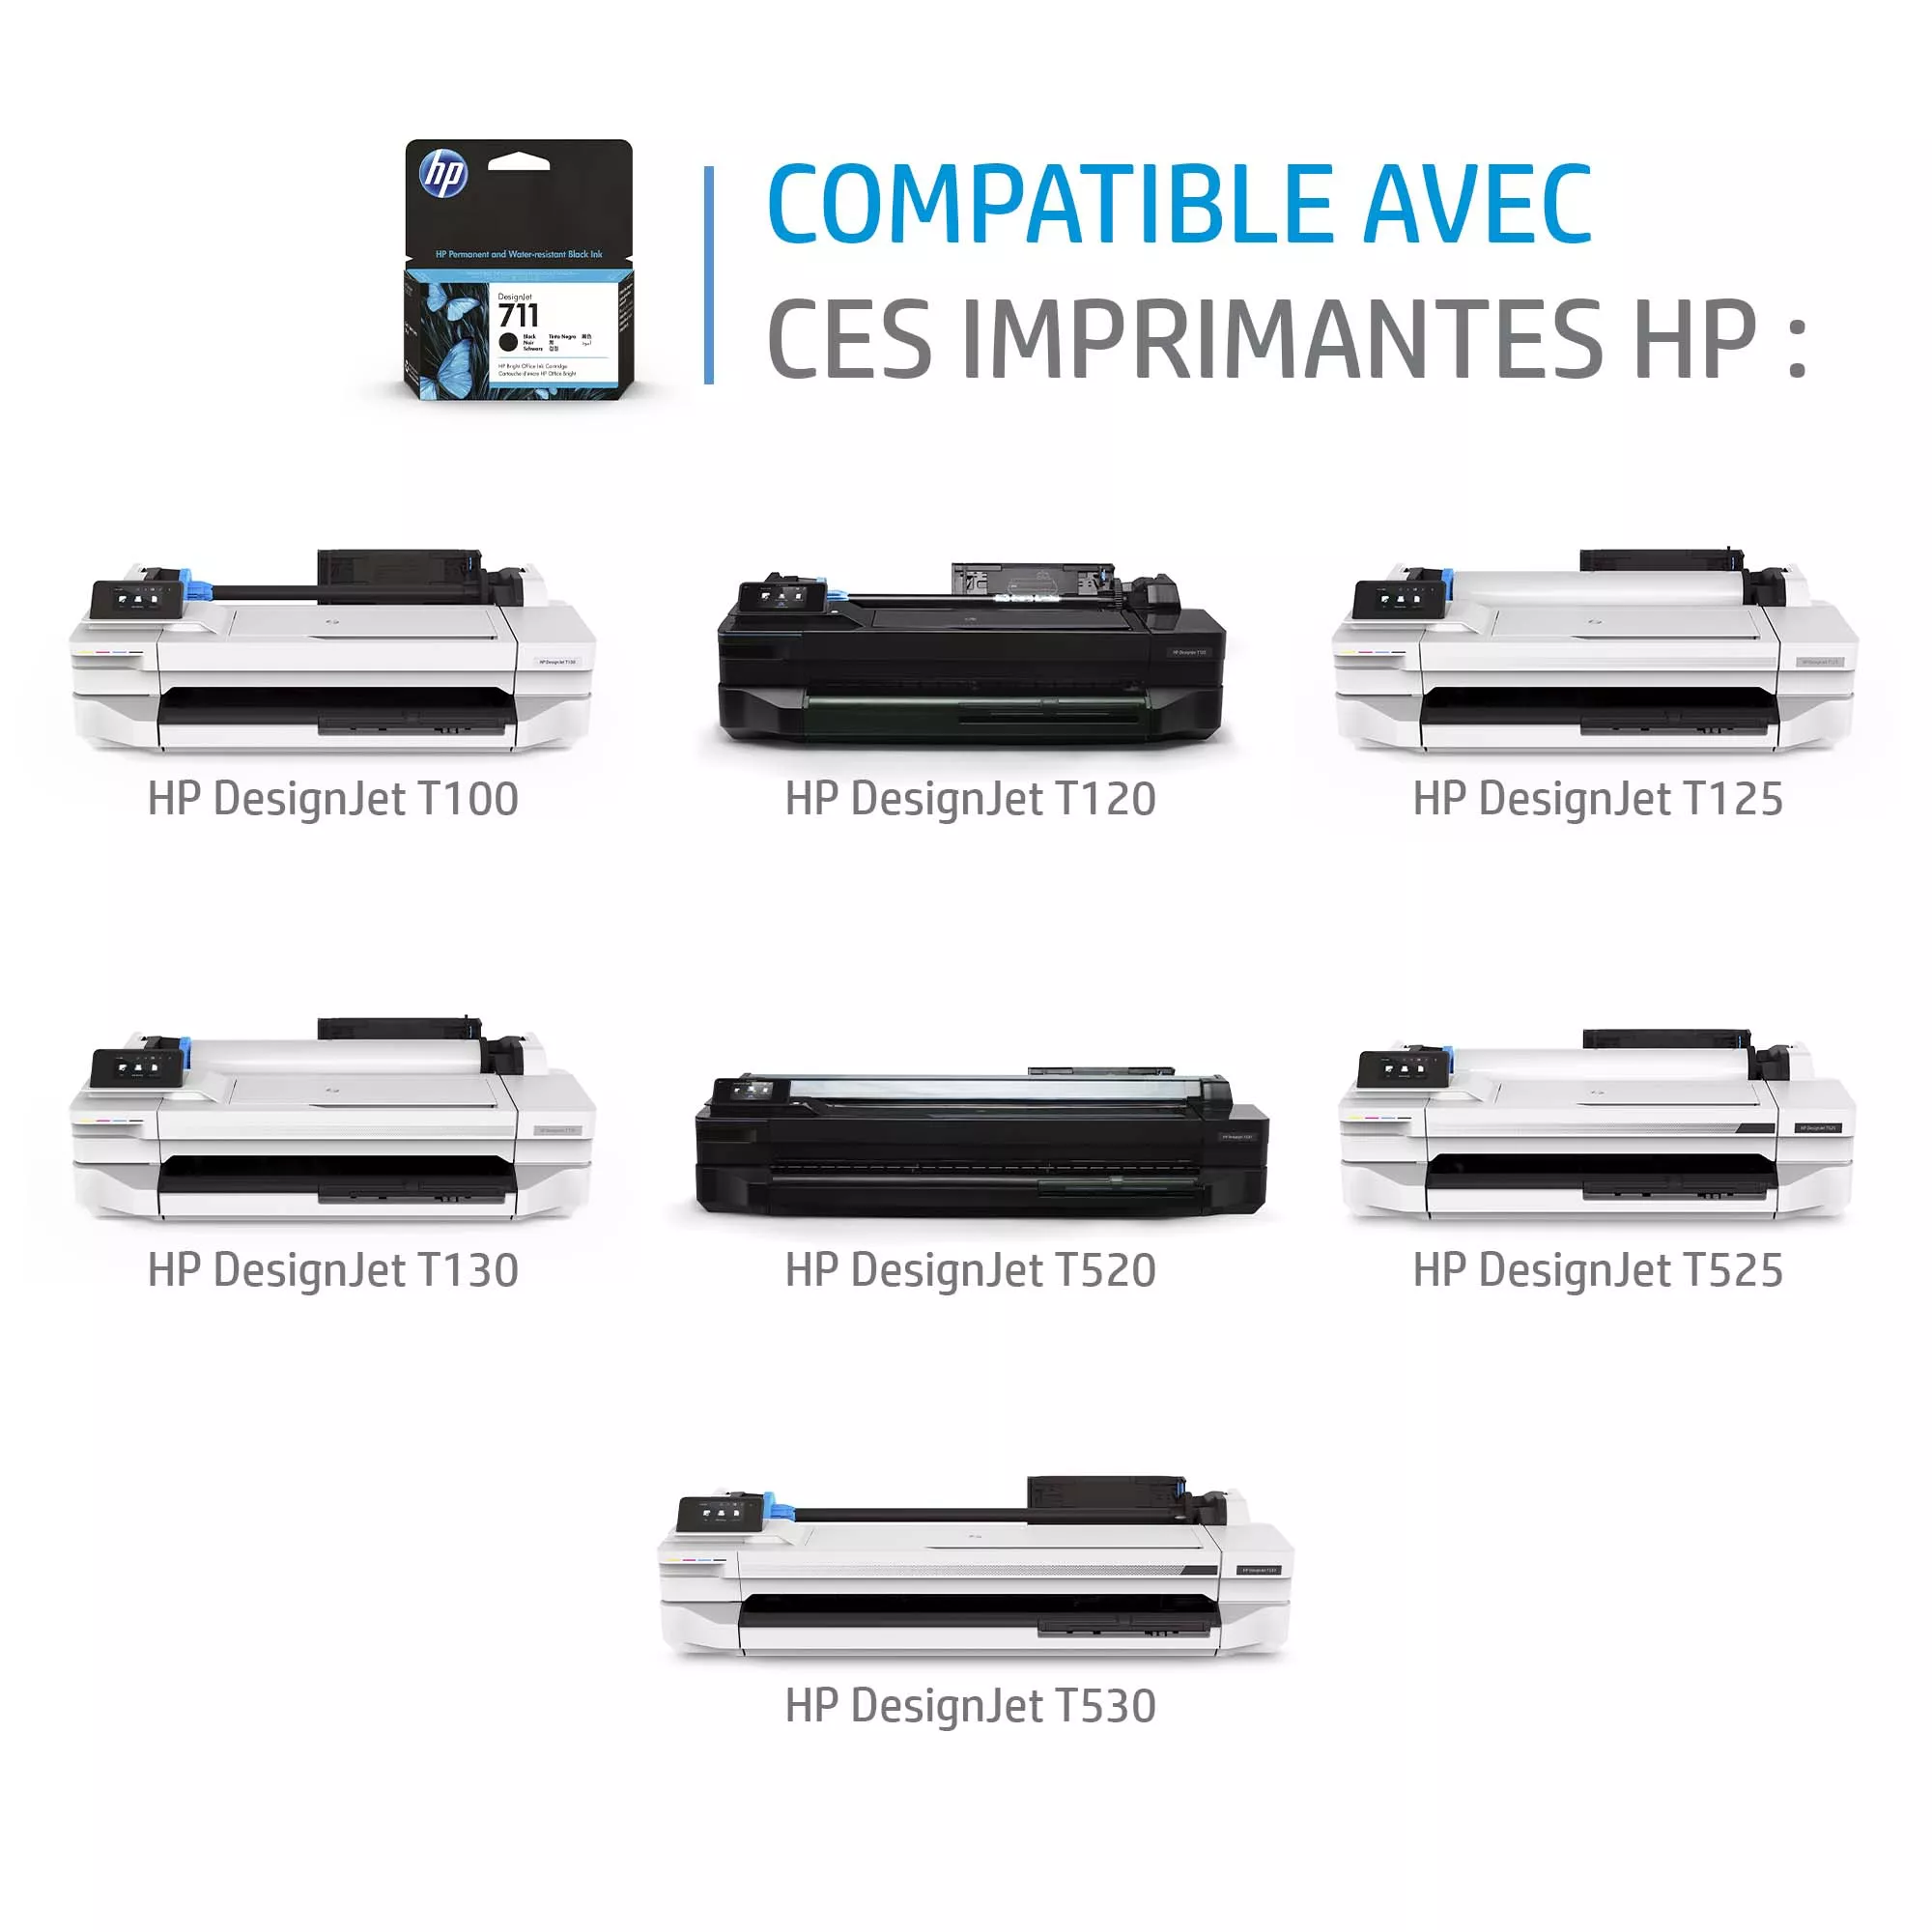 Vente HP 711 original Ink cartridge CZ130A cyan standard HP au meilleur prix - visuel 2